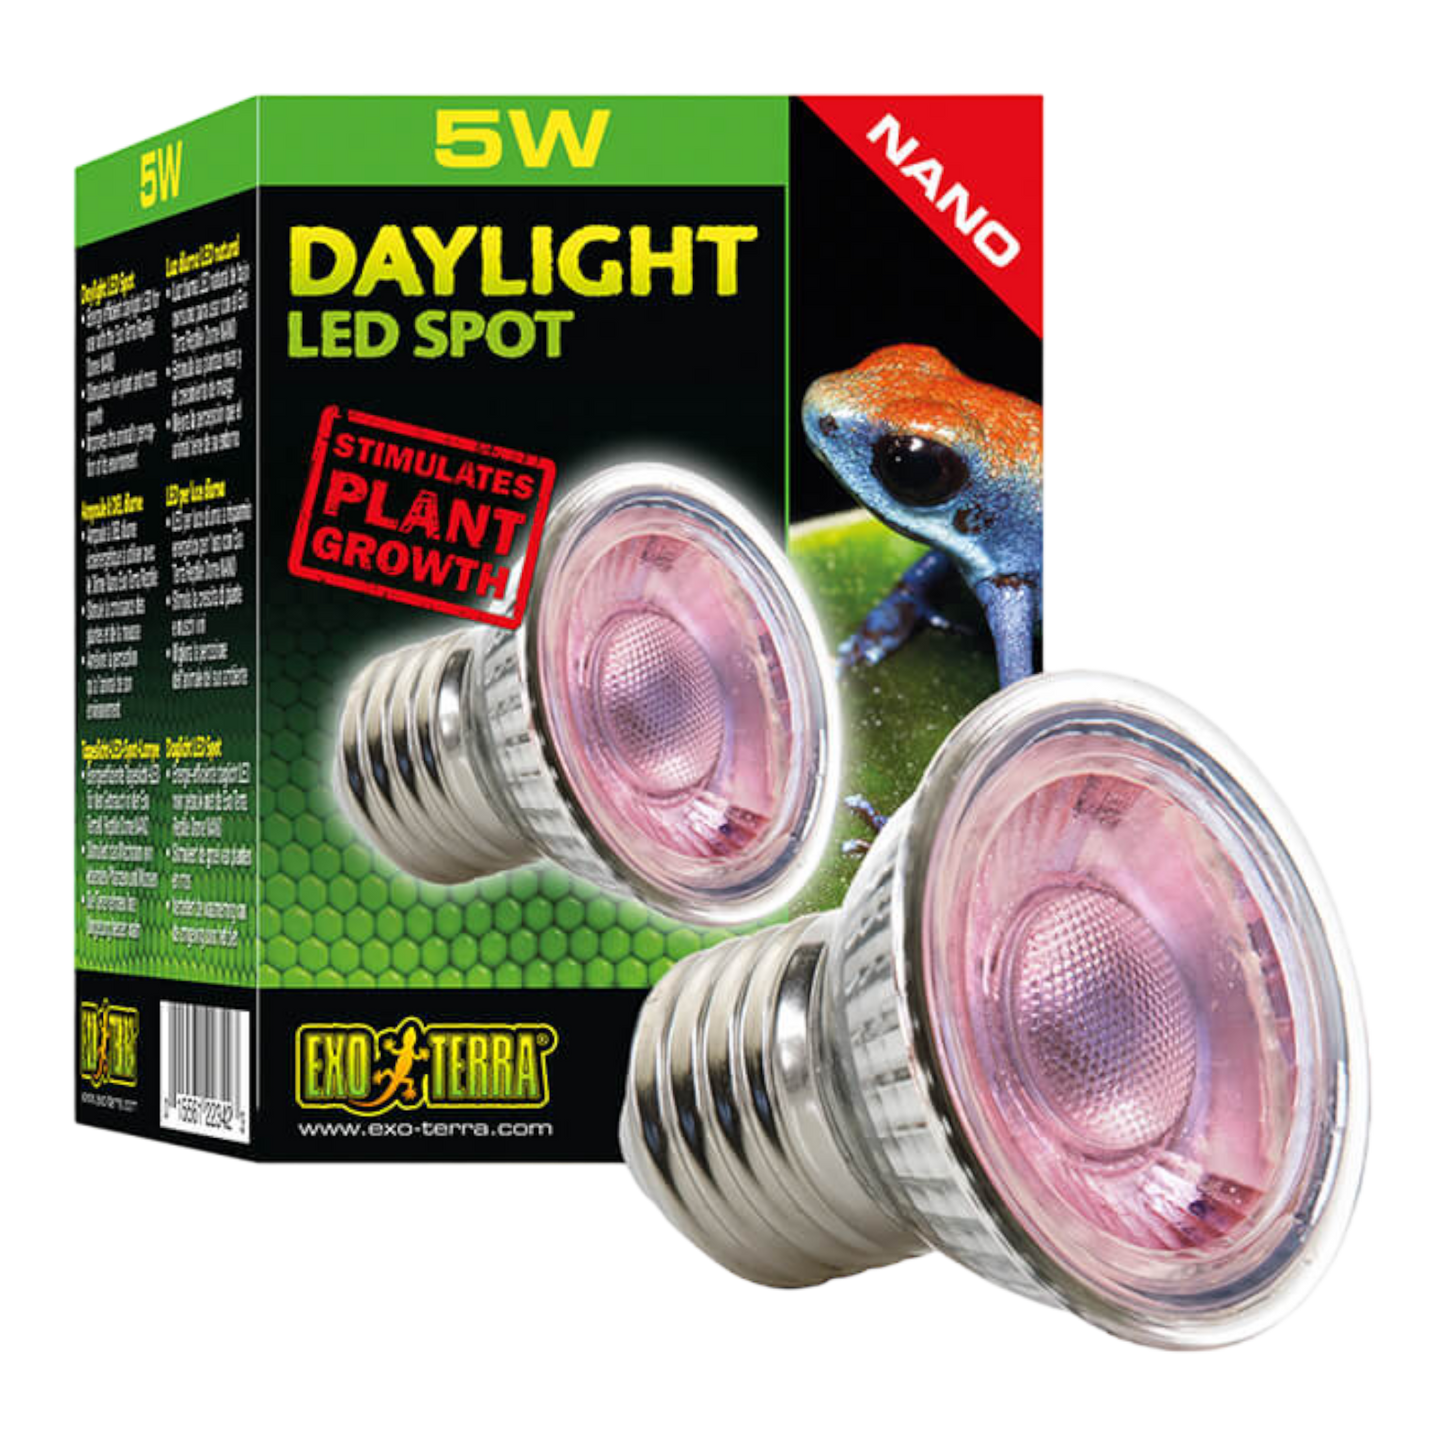 Exo Terra Daylight LED Spot NANO  ist eine energieeffiziente Tageslicht-LED-Lampe, die in Nano- und Mini-Terrarien für tolle Lichtverhältnisse sorgt und dabei hohe Mengen an sichtbarem Licht ausstrahlt.